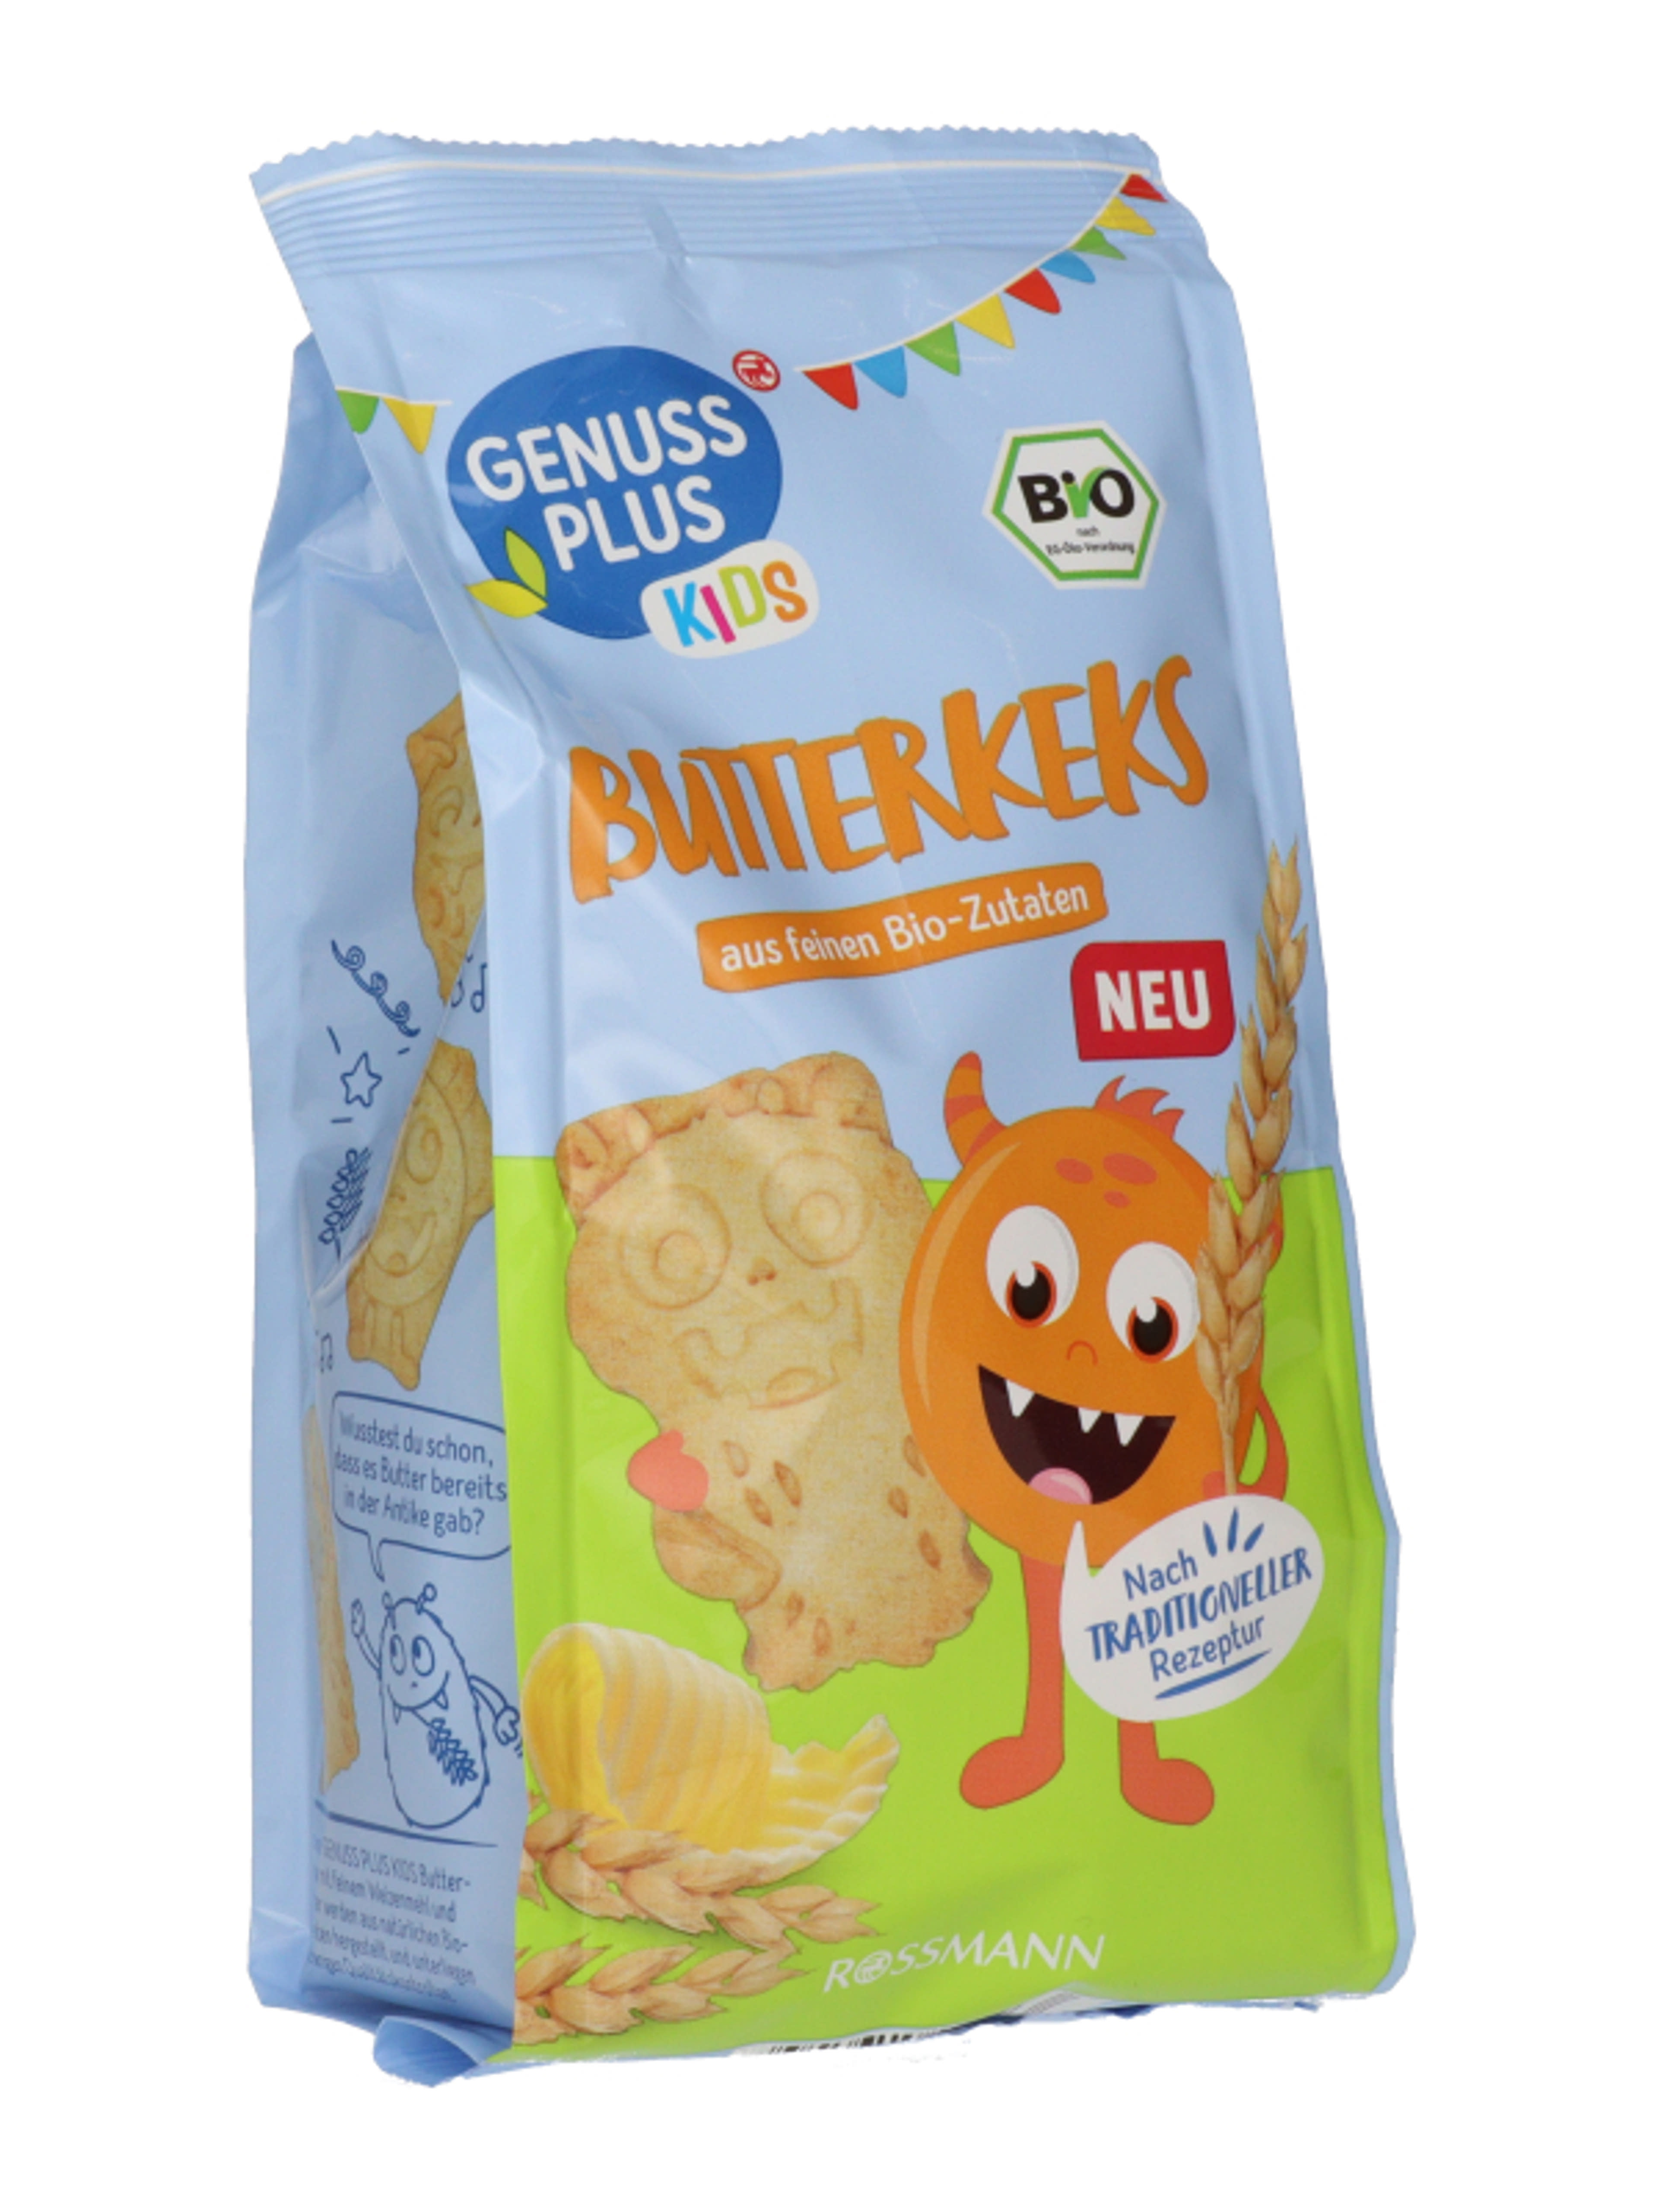 Genuss Plus Kids vajas keksz - 125 g-5